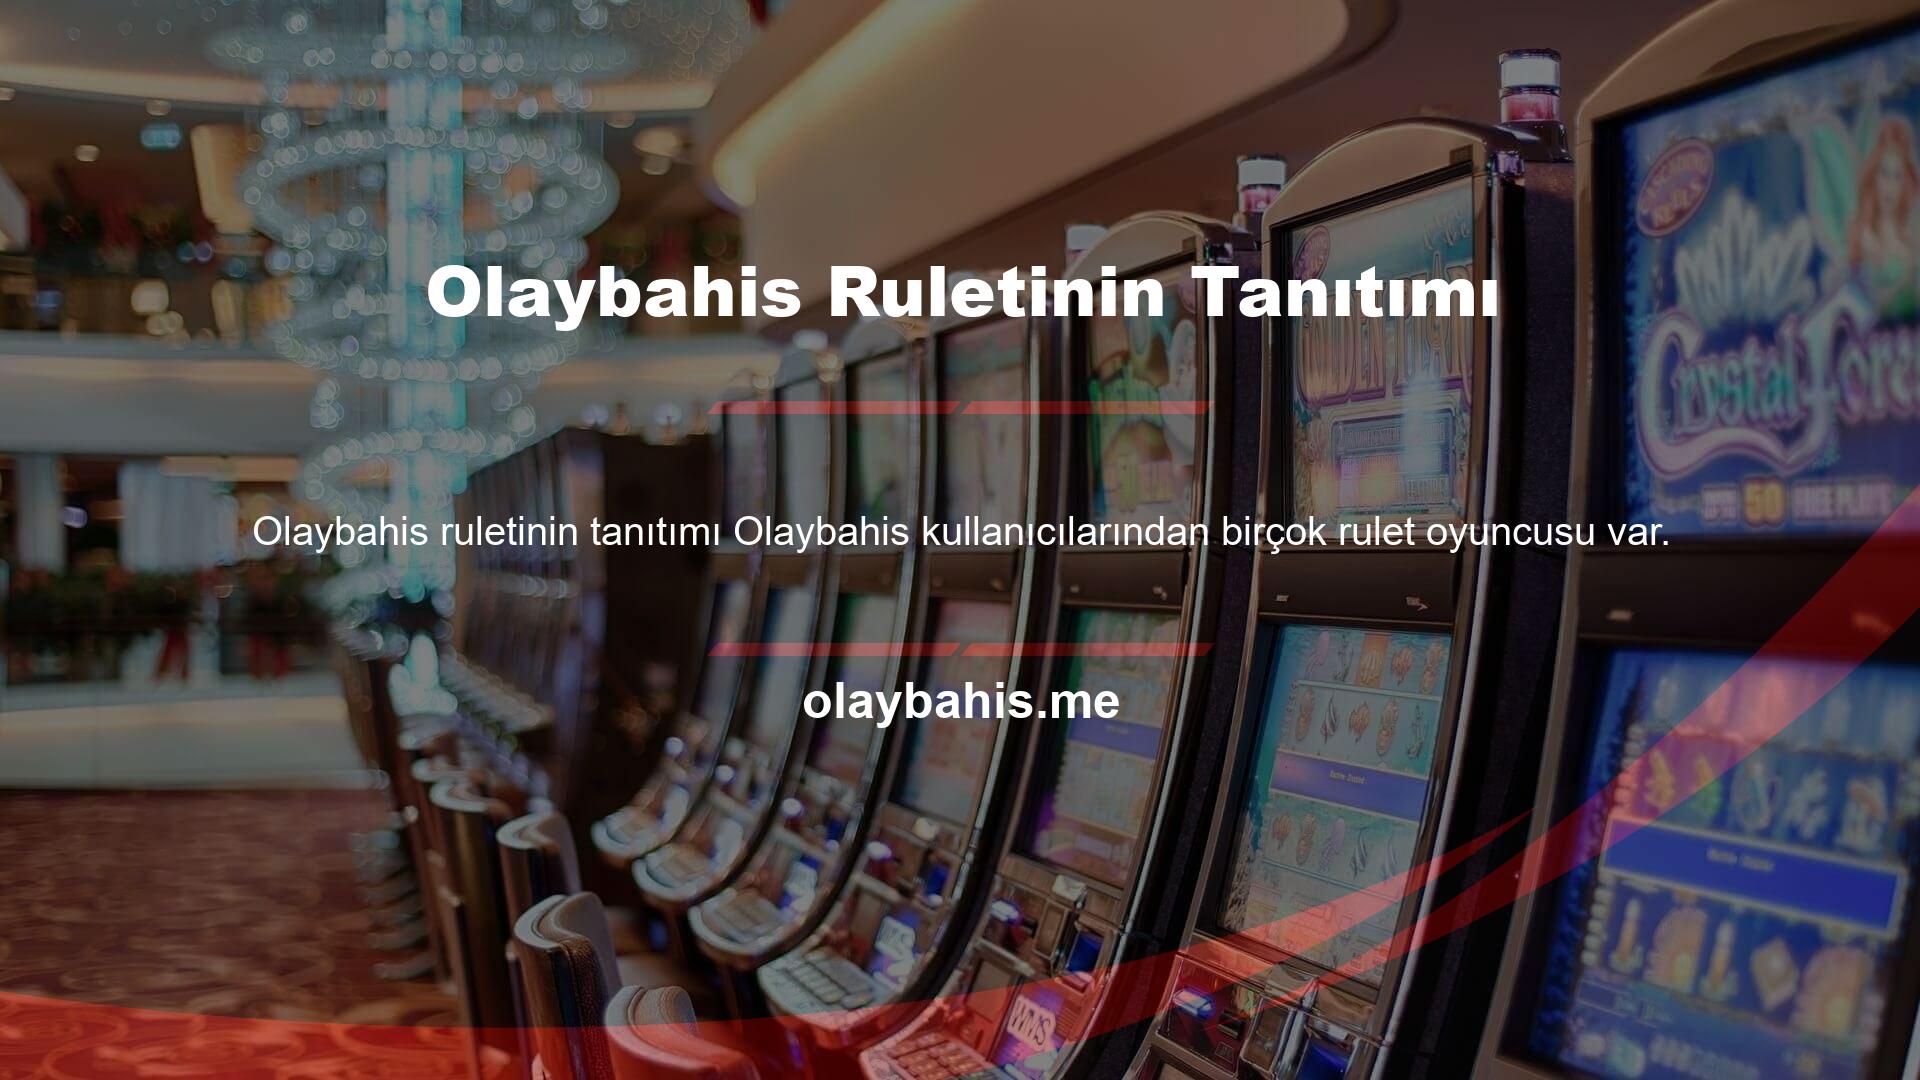 Olaybahis rulet oyununa şu şekilde ulaşabilirsiniz: Olaybahis Canlı Casino bölümüne girdiğinizde karşınıza casino platformu çıkacaktır